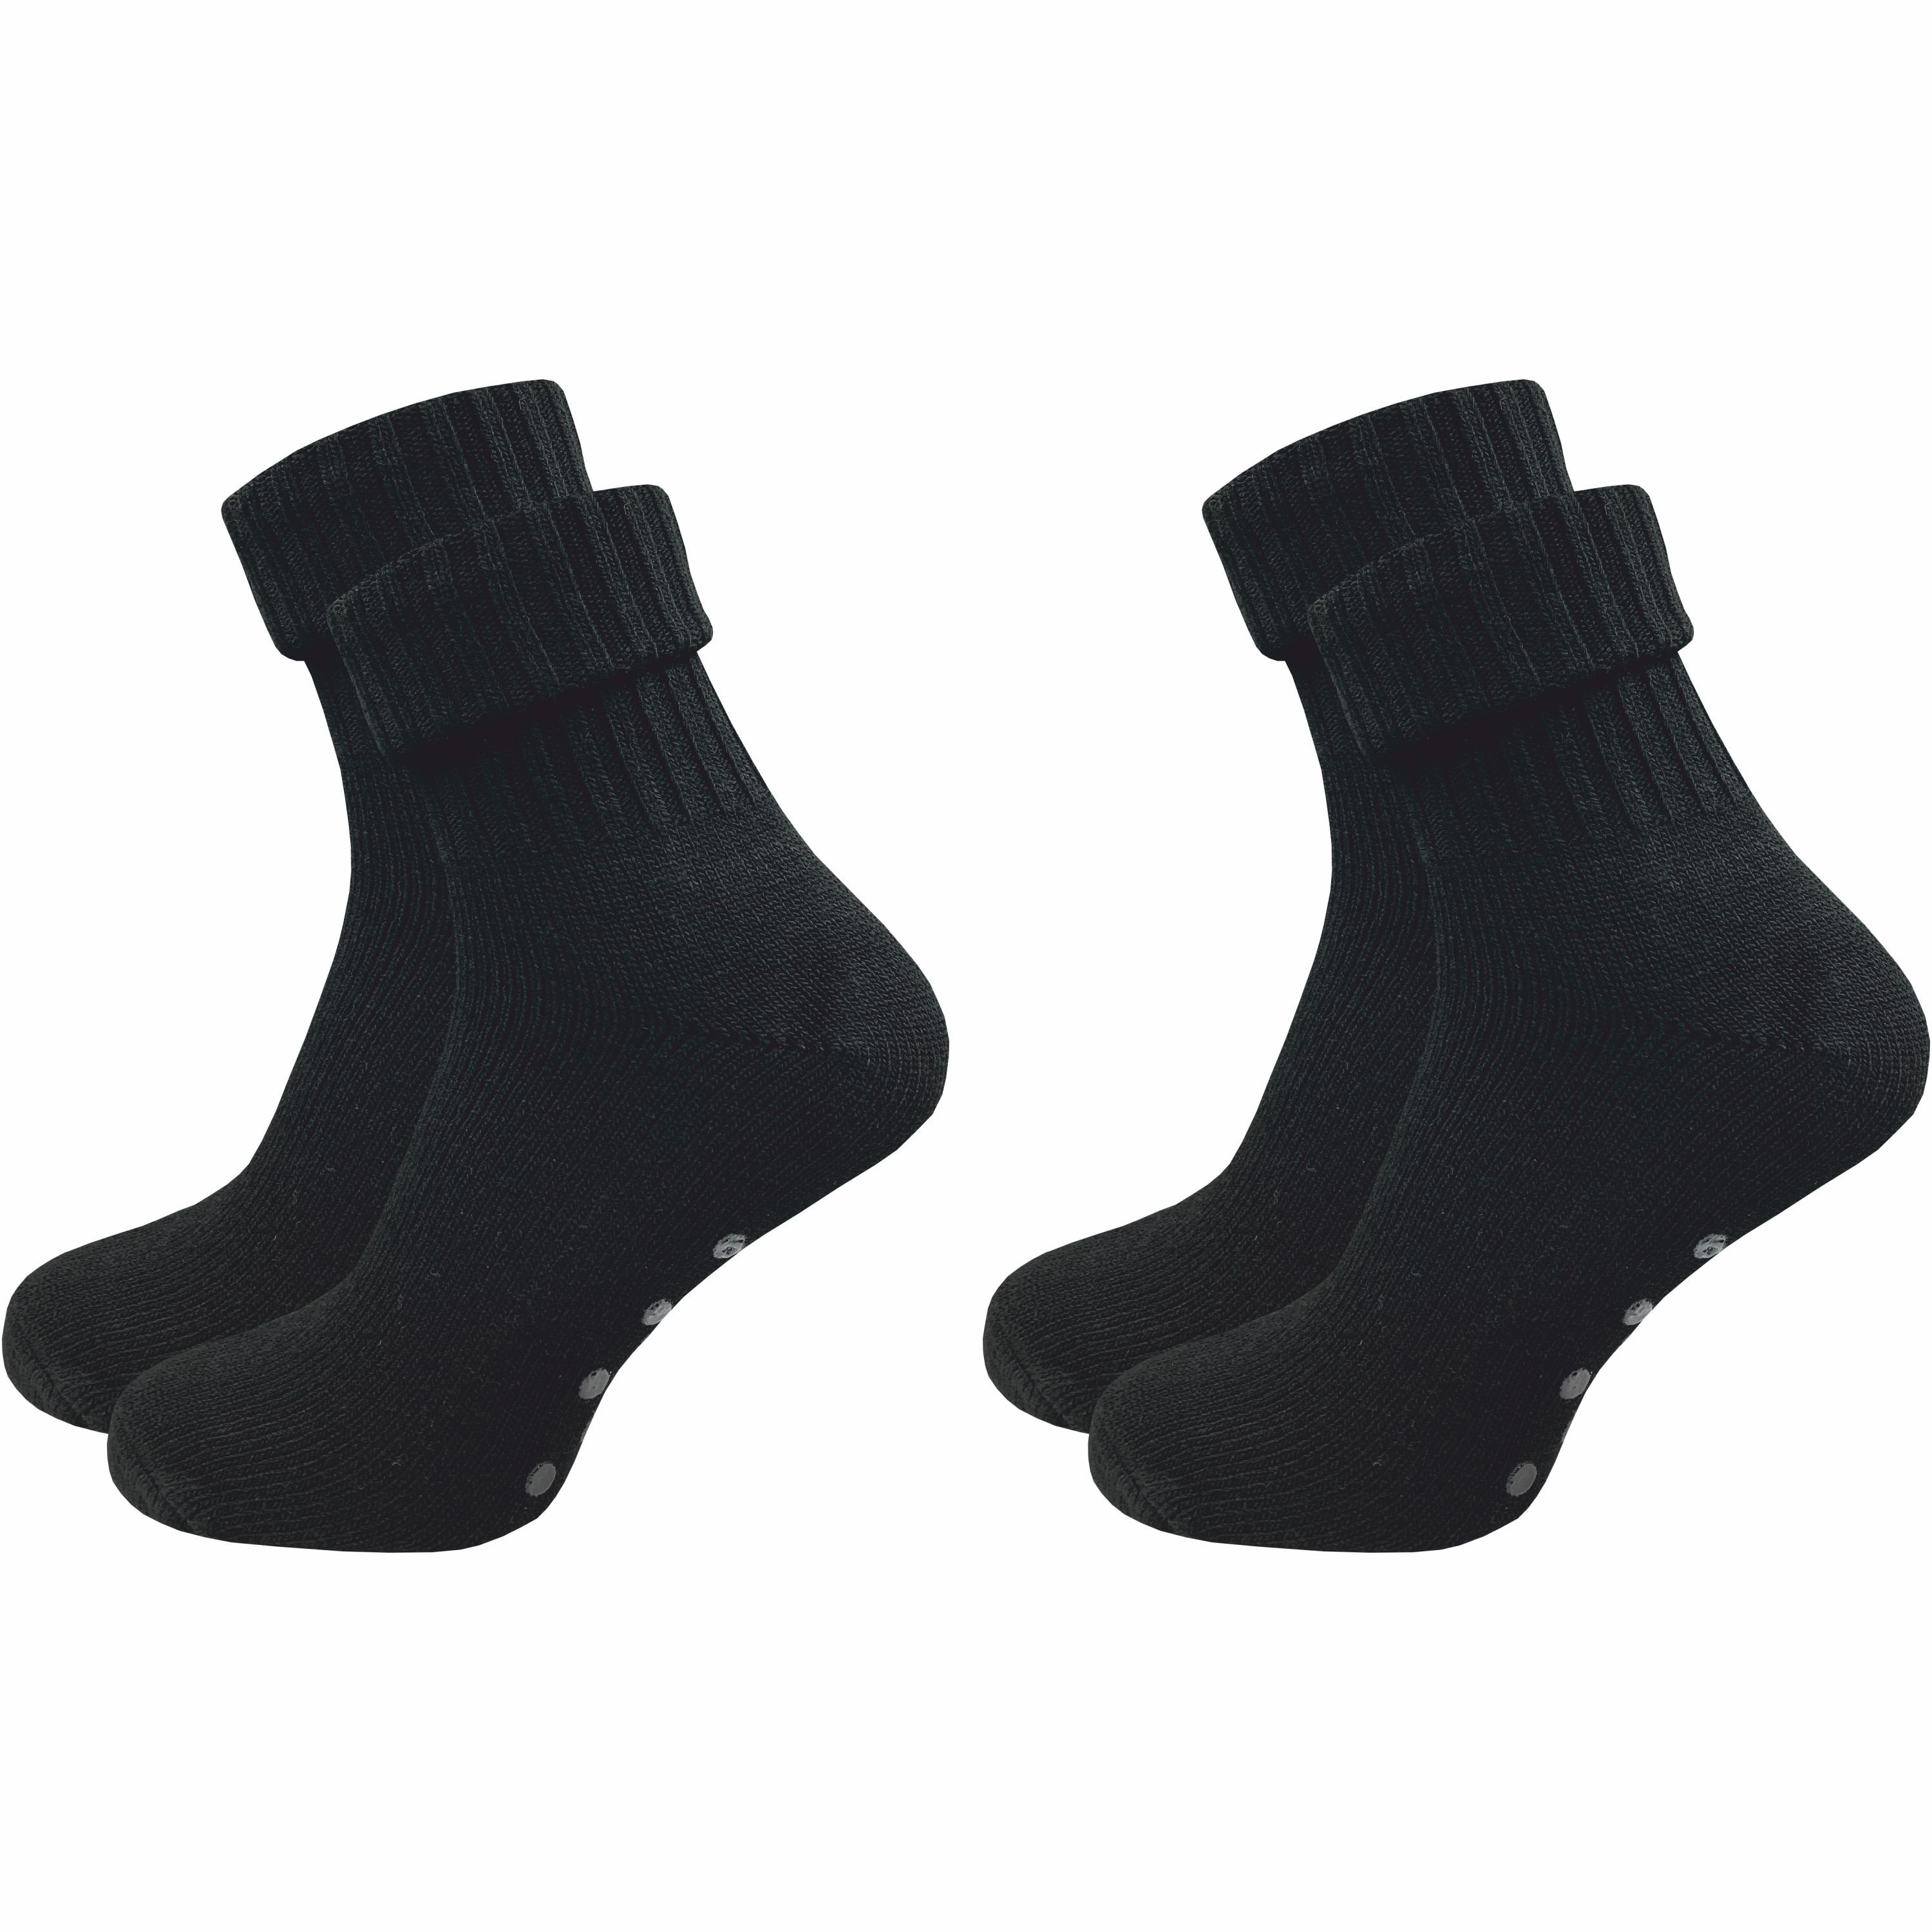 GAWILO ABS-Socken für Damen aus Wolle für extra warme Füße, Stoppersocken (2 Paar) Rutschfeste Hausschuhsocken, Weiche & kuschlige Socken mit Noppen schwarz | Wintersocken